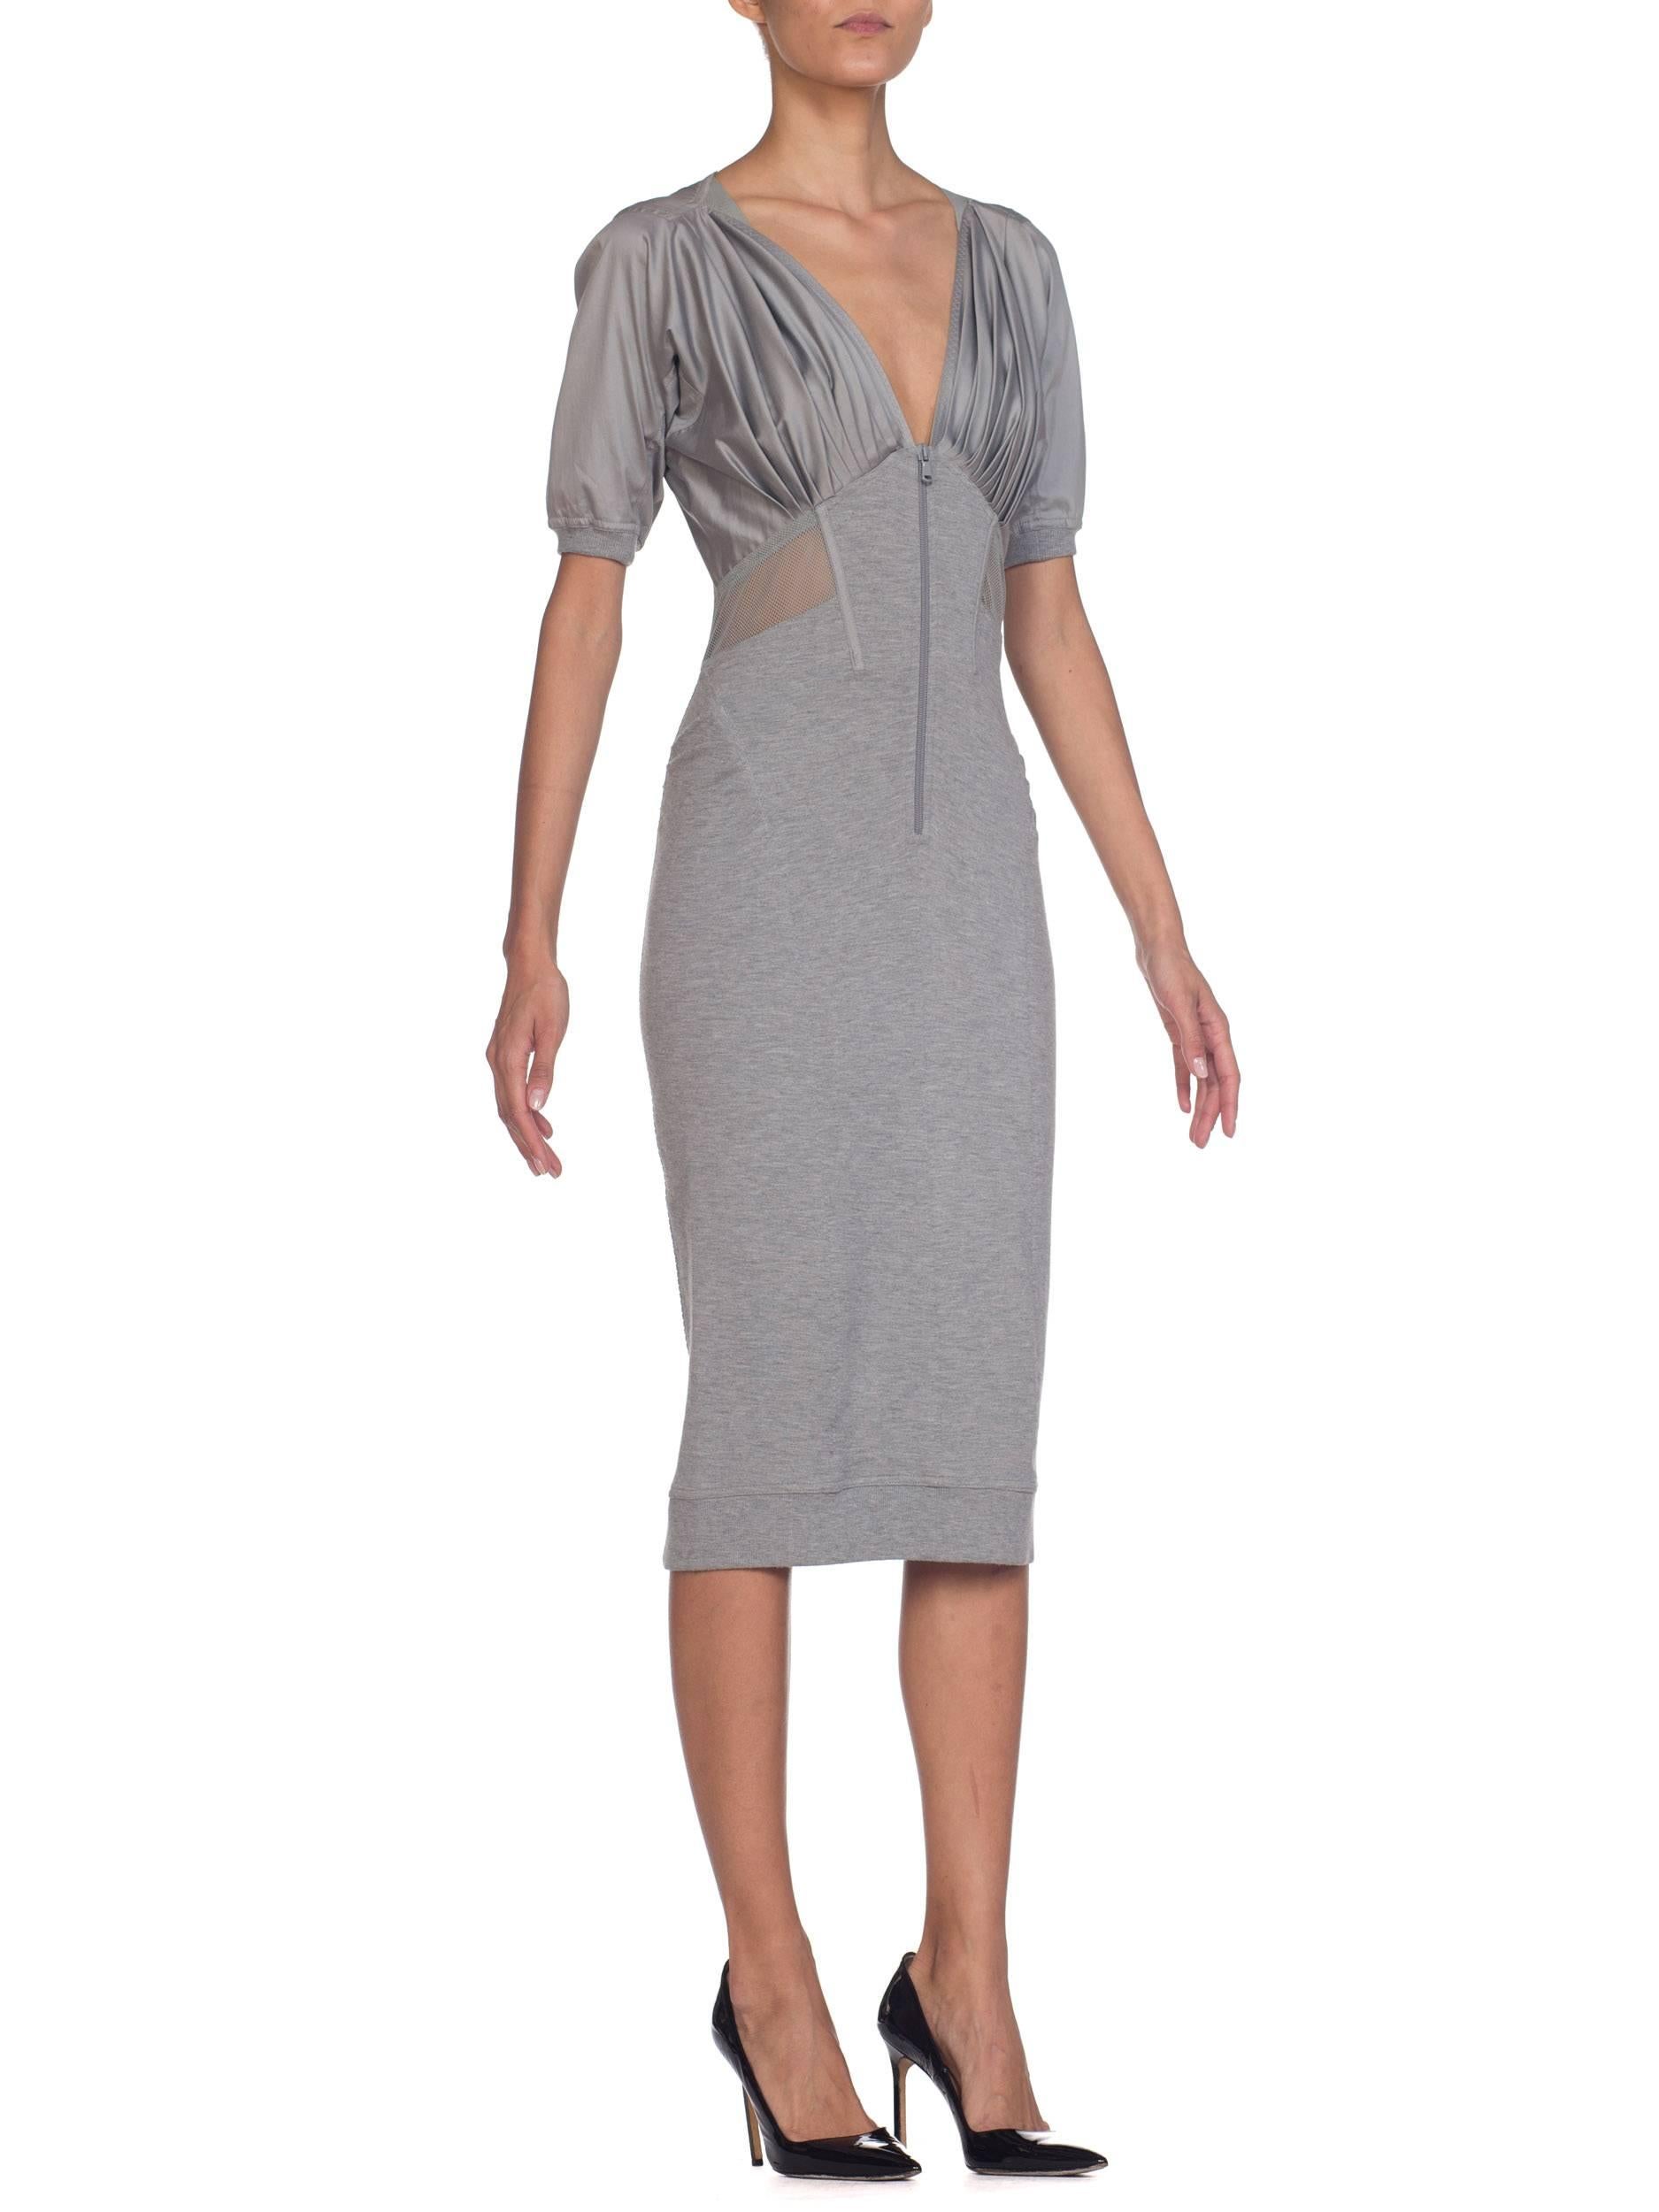 Gray Donna Karan Collection Jersey & Net Boned Zipper Dress